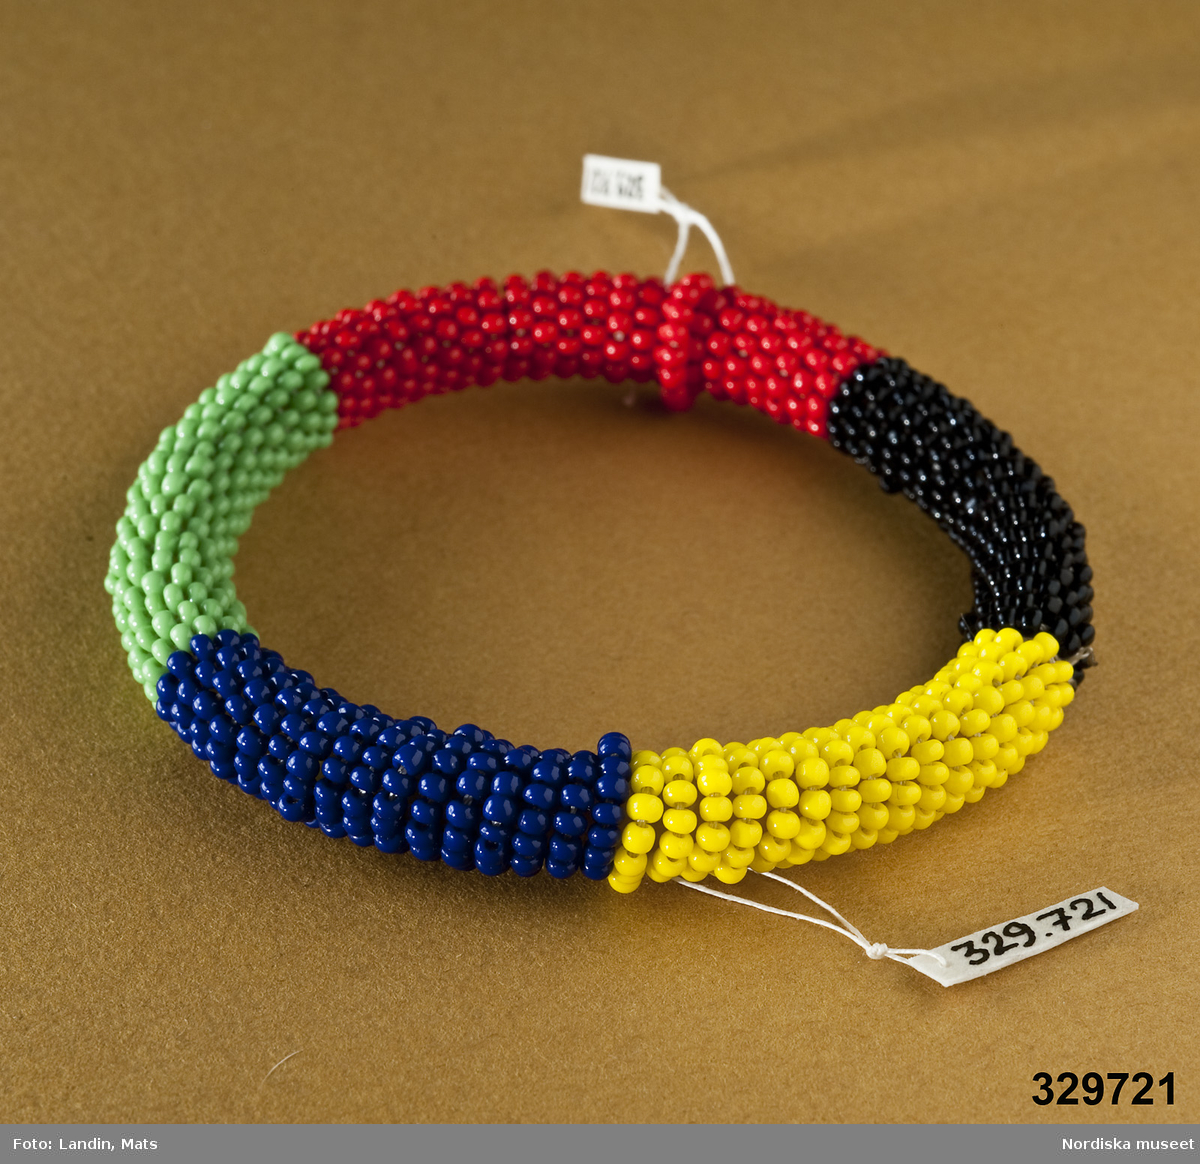 Runt armband prytt med små plastpärlor i gult, lila, svart, grönt och rött. Afrikanska influenser.
/Zingoalla Rosenqvist 2009-02-05